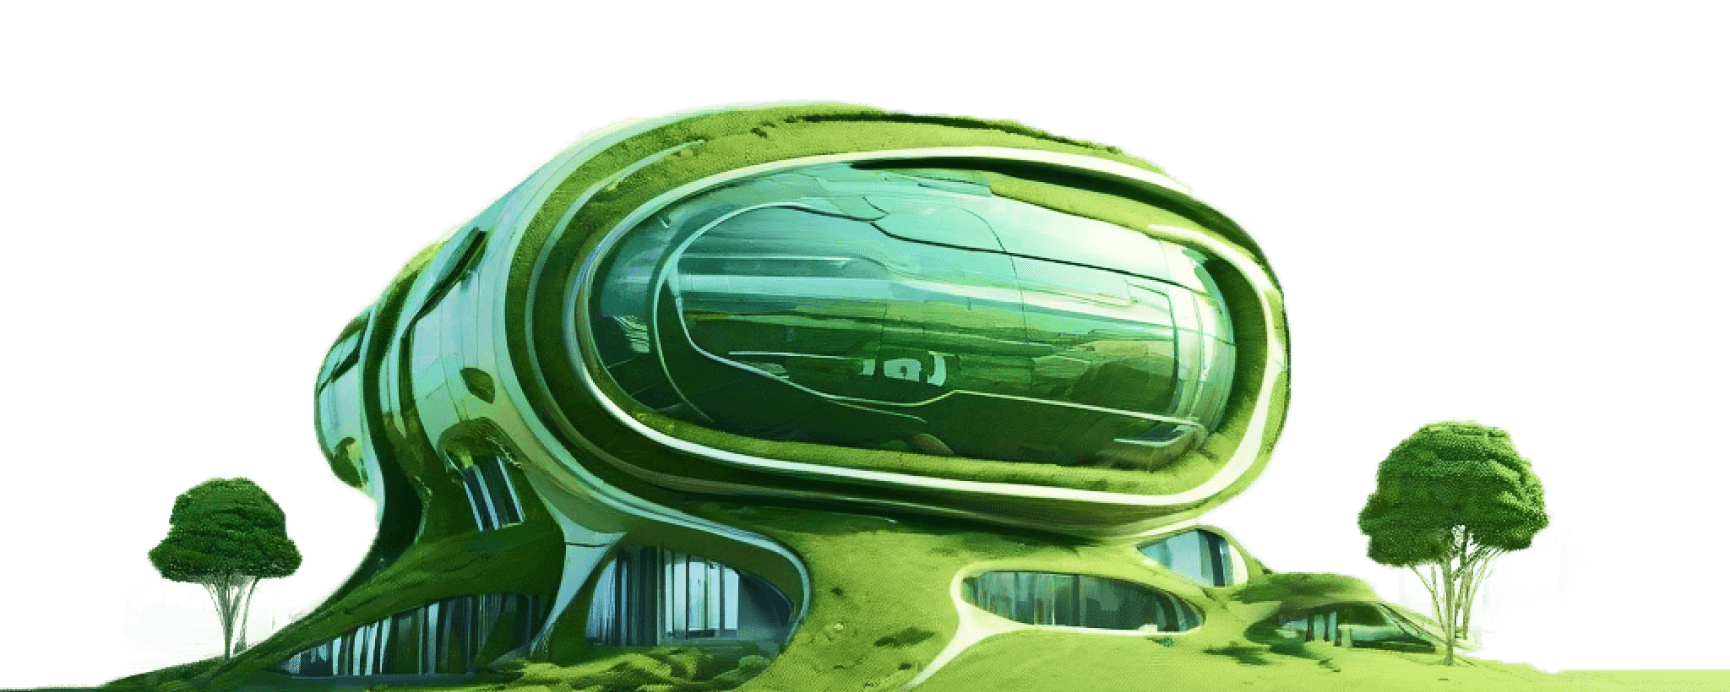 Leonardo_Diffusion_XL_go_green_futuristic_building_concept_art_0 1